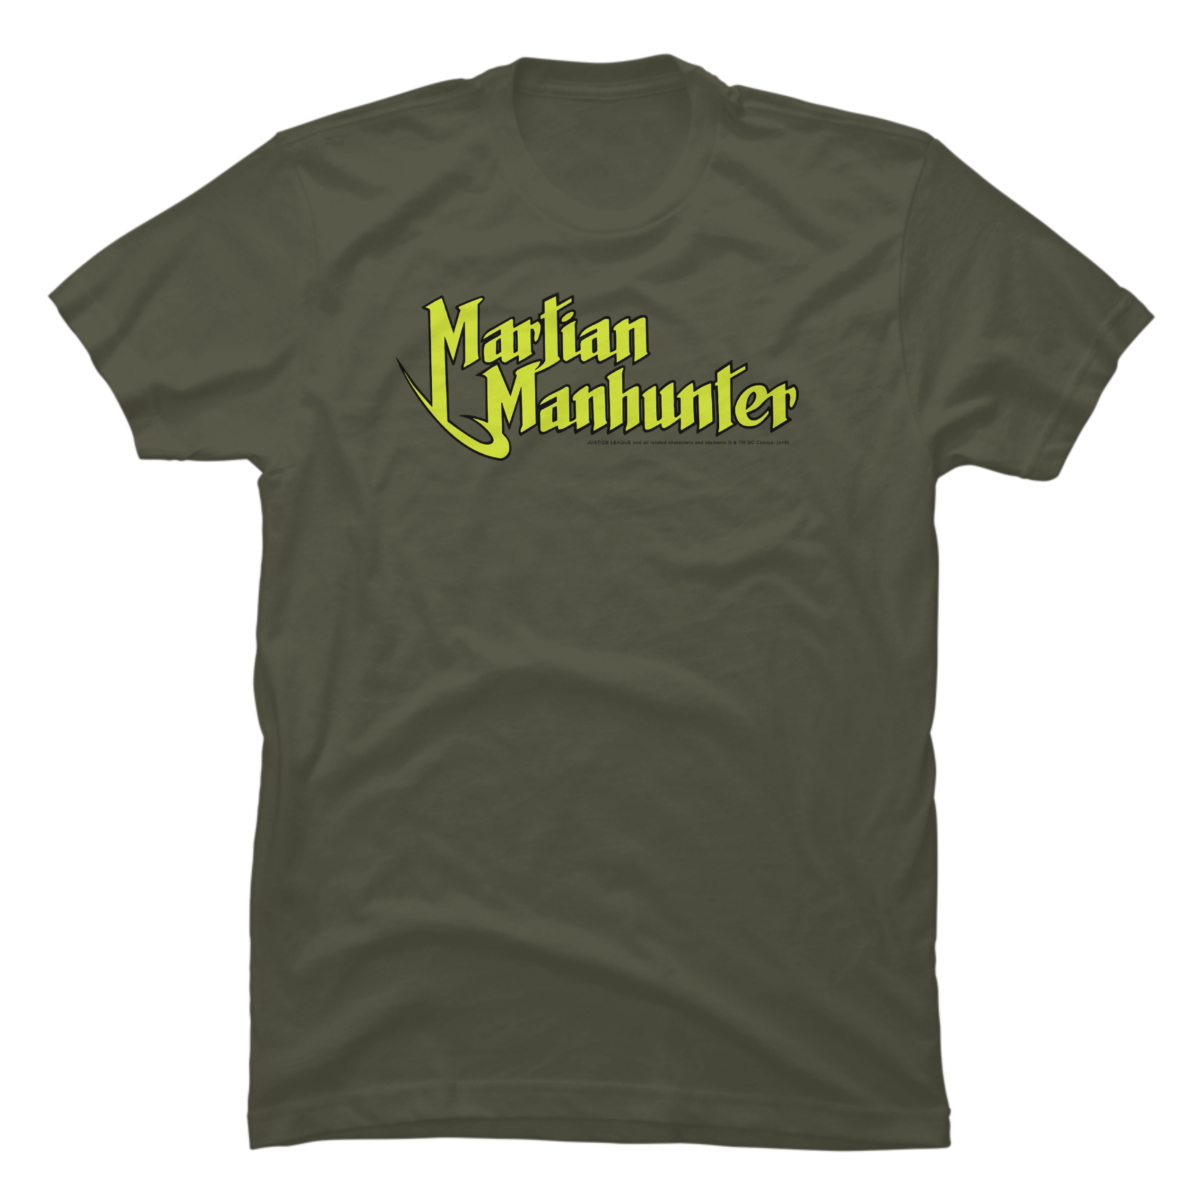 martian manhunter shirt